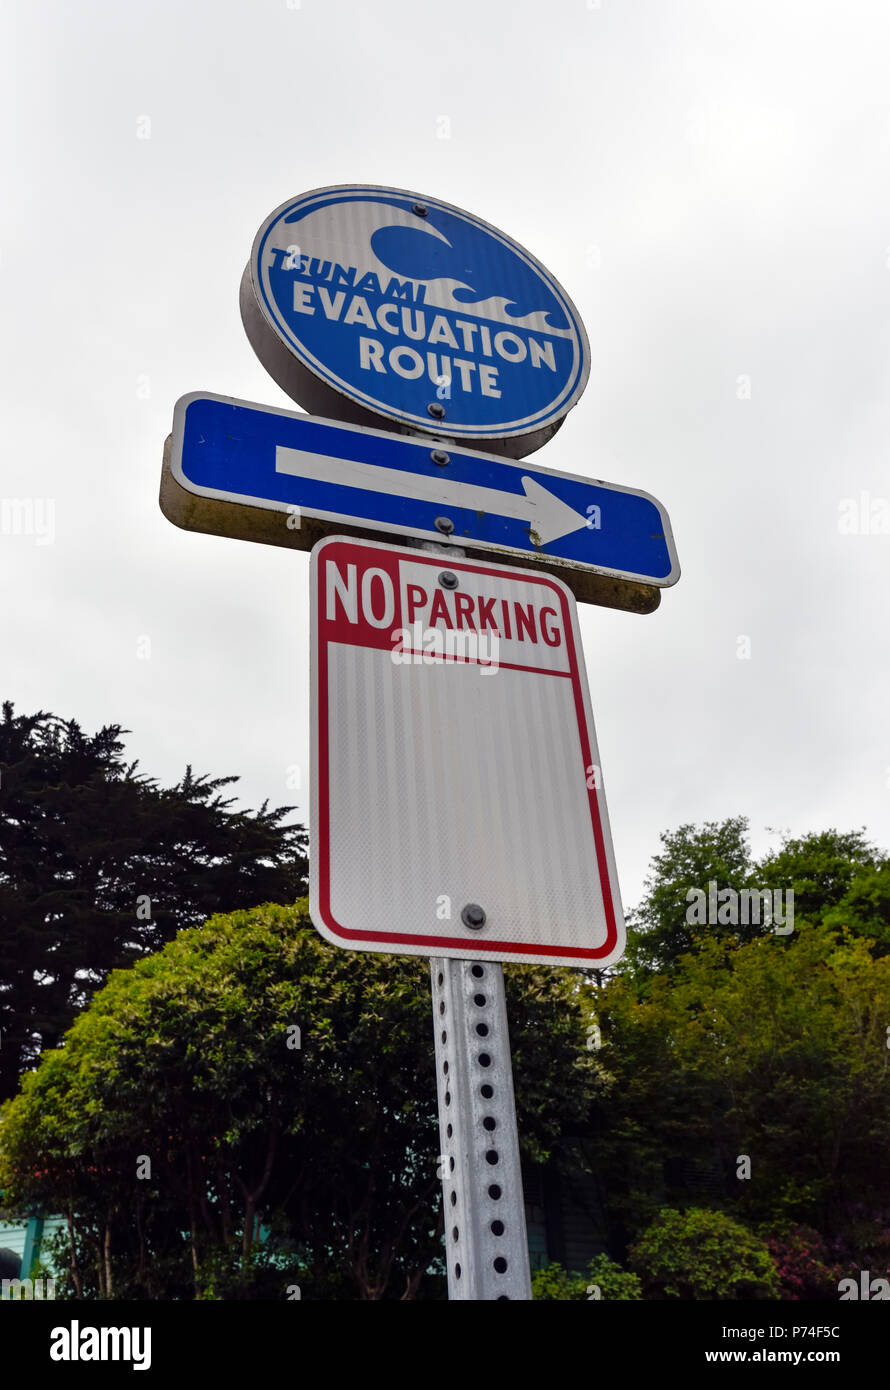 Tsunami Evacuation Route sign in Newport, Oregon Stock Photo